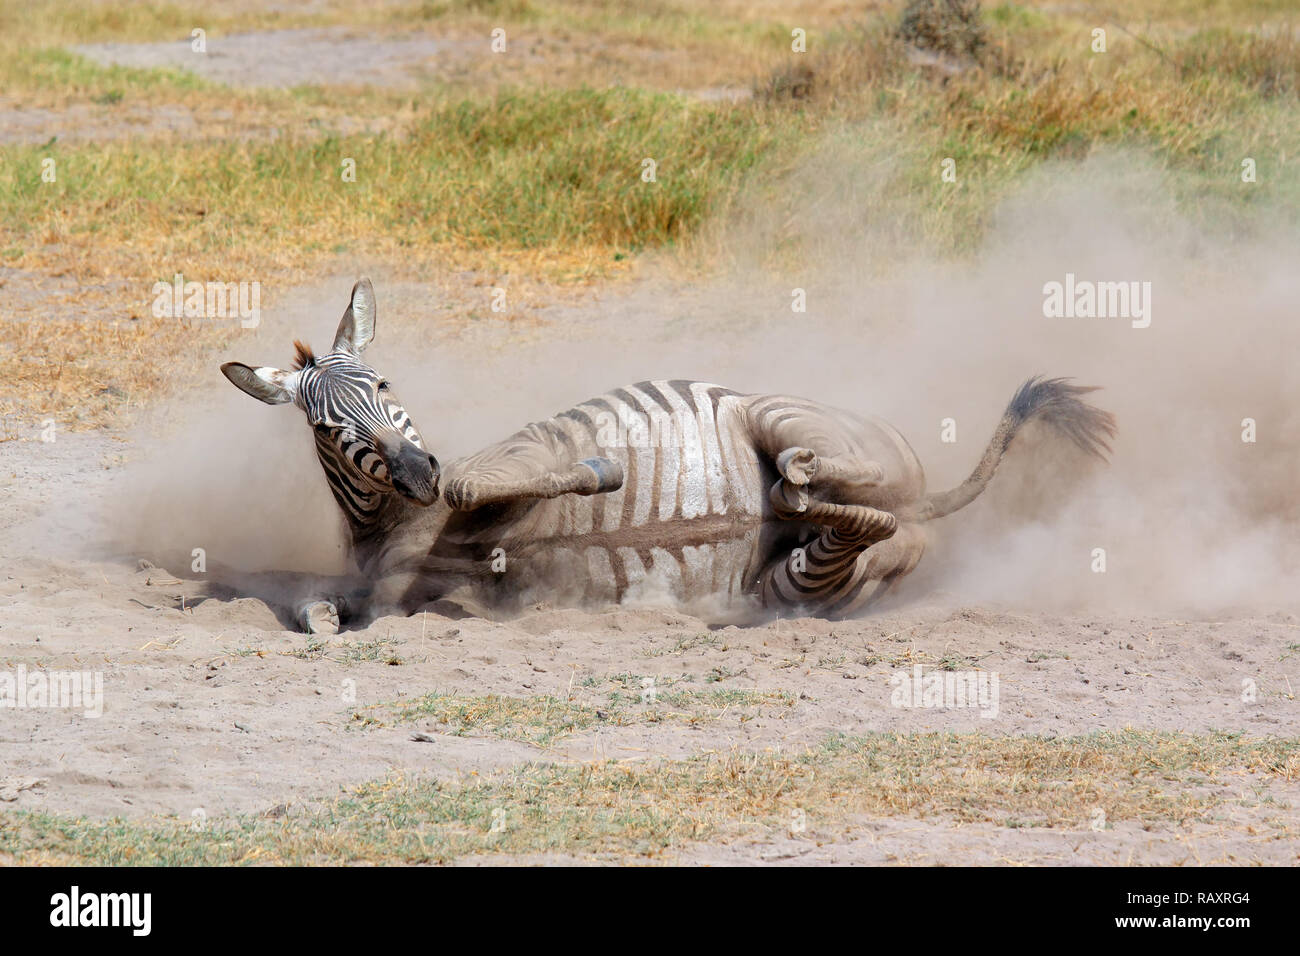 Eine ebenen Zebra (Equus burchelli) Rollen in Staub, Amboseli National Park, Kenia Stockfoto